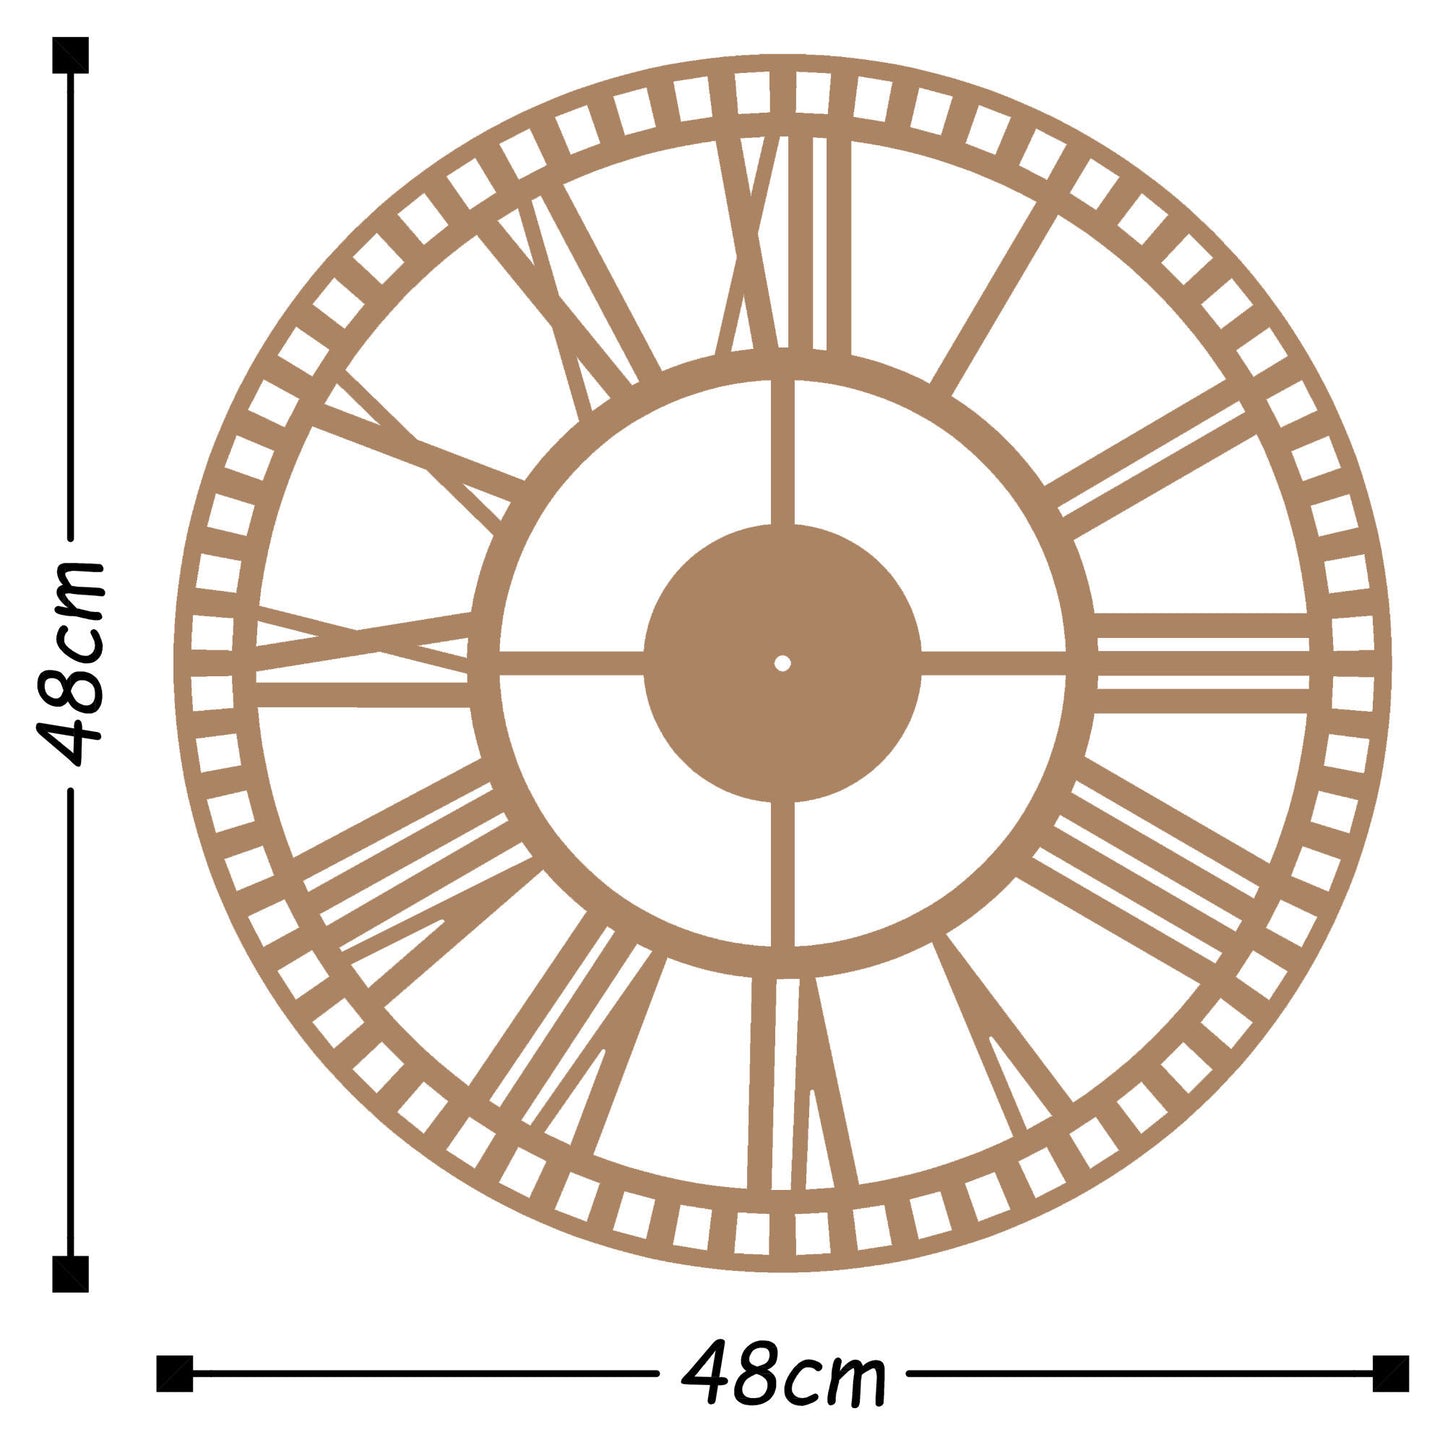 Metal Wall Clock 10 - Copper - Decorative Metal Wall Clock